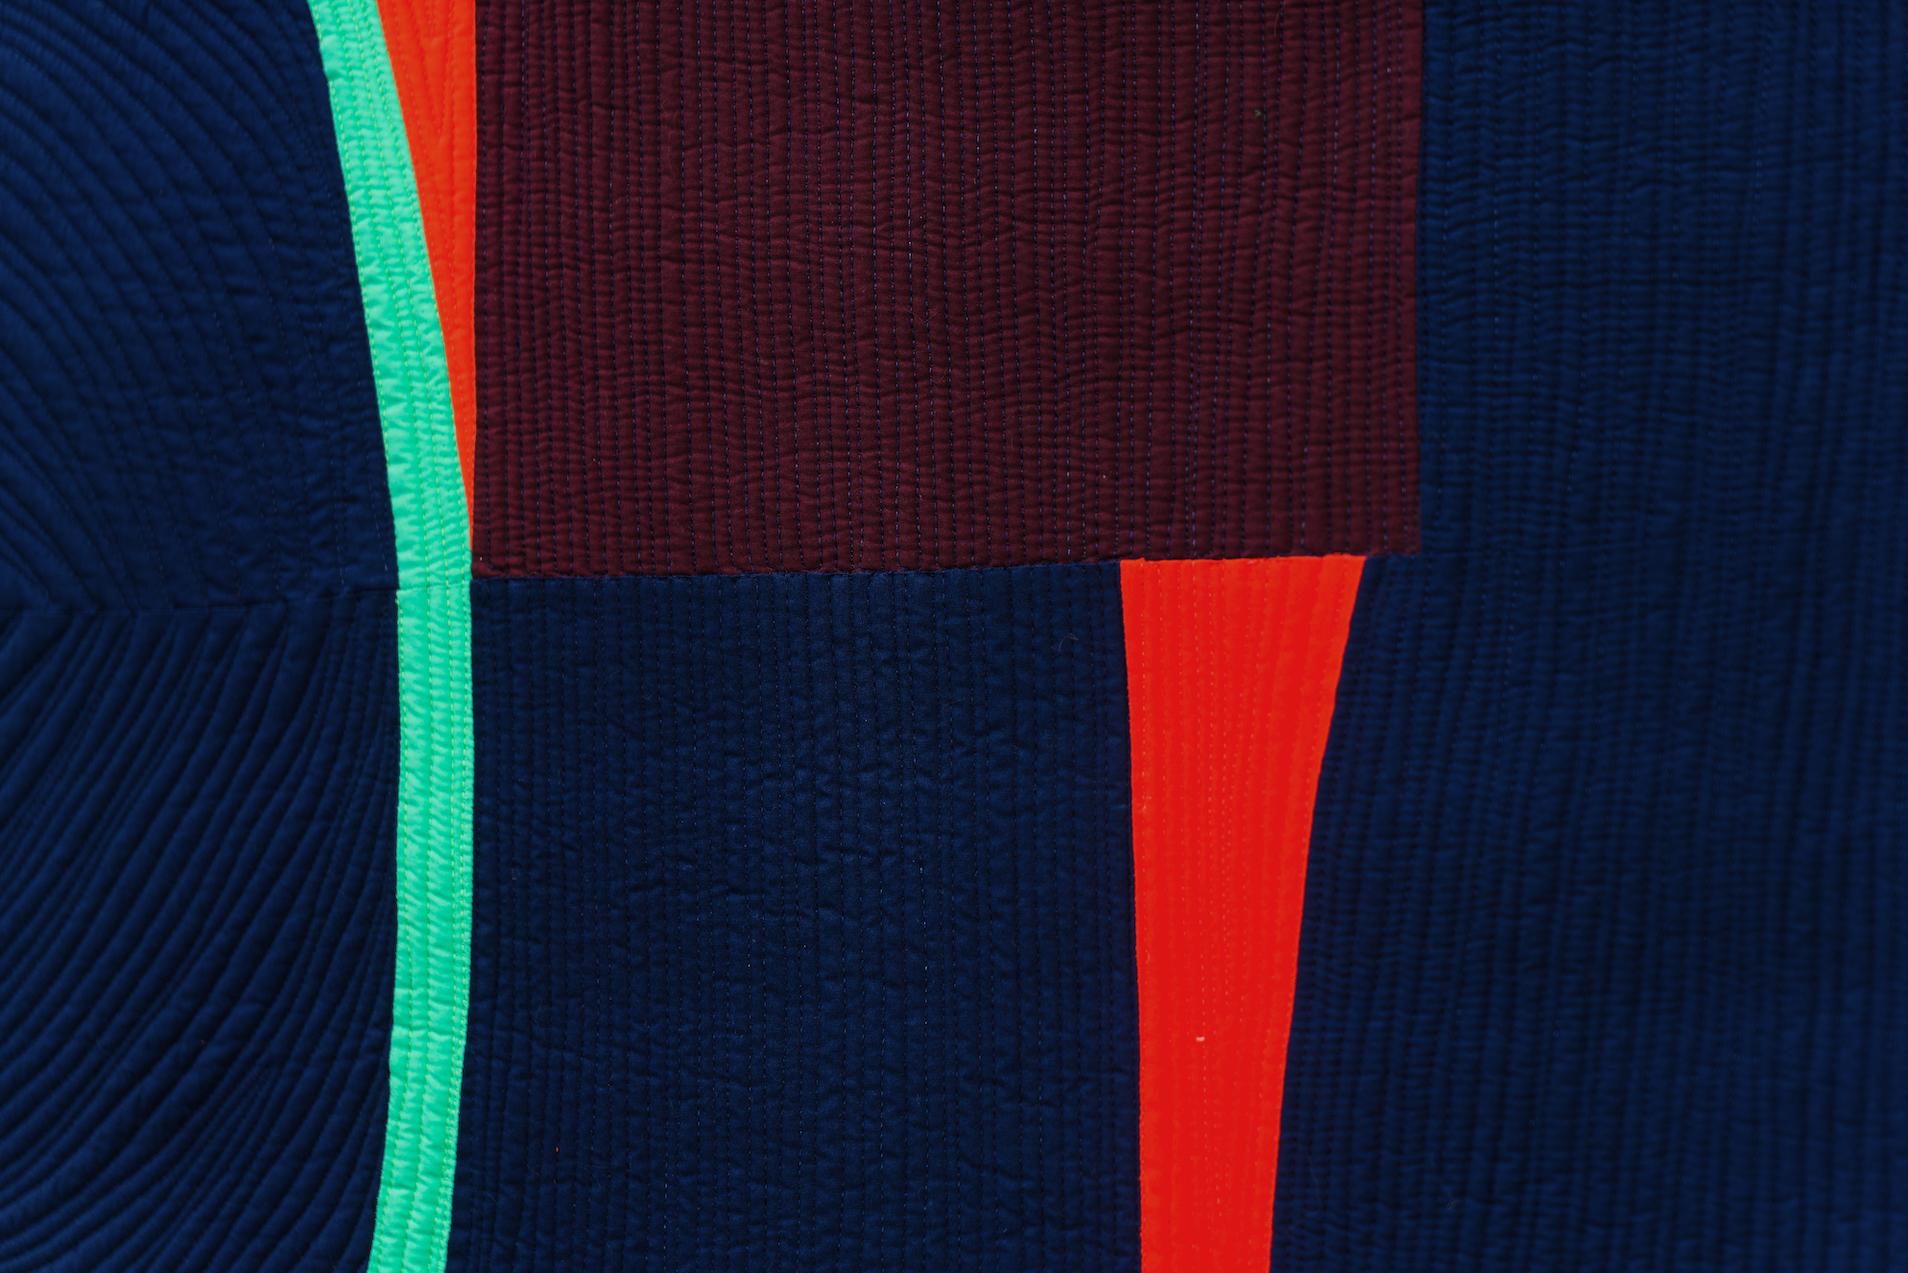 Die zeitgenössische Textilkünstlerin Gerri Spilka nimmt gewöhnliche Baumwollstücke und verwandelt sie in kraftvolle Collagen aus leuchtenden Farben. Dabei verbindet sie disparate Elemente des Quiltens, der modernen Abstraktion und der menschlichen